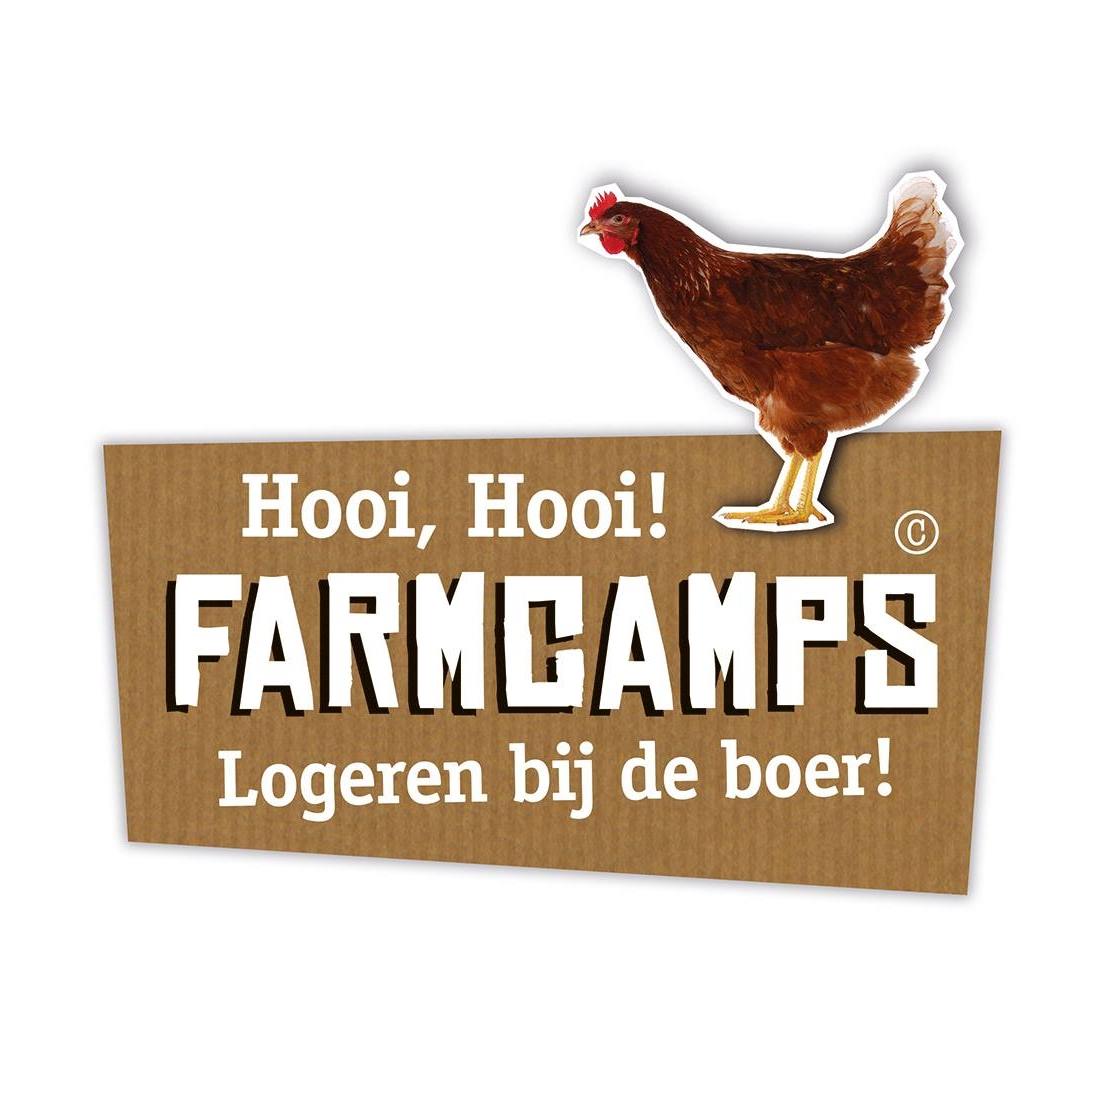 Farmcamps.nl reviews, beoordelingen en ervaringen